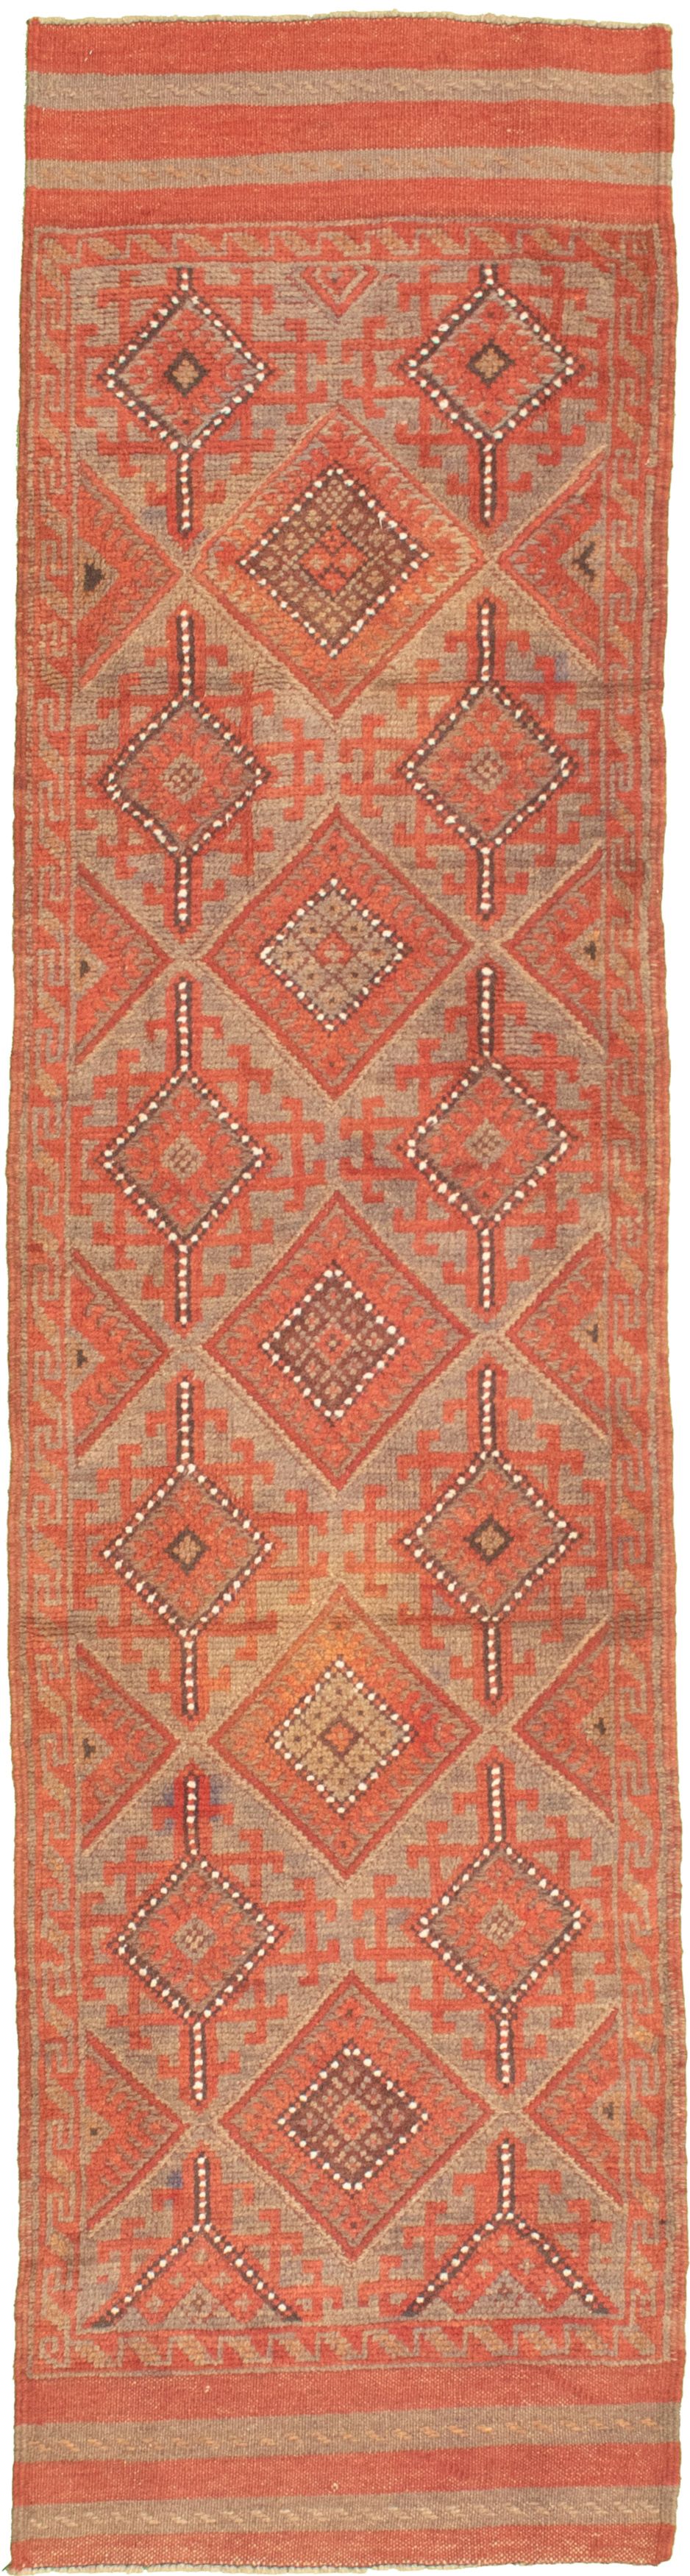 Hand-knotted Tajik Caucasian Khaki Wool Rug 2'1" x 8'3" Size: 2'1" x 8'3"  